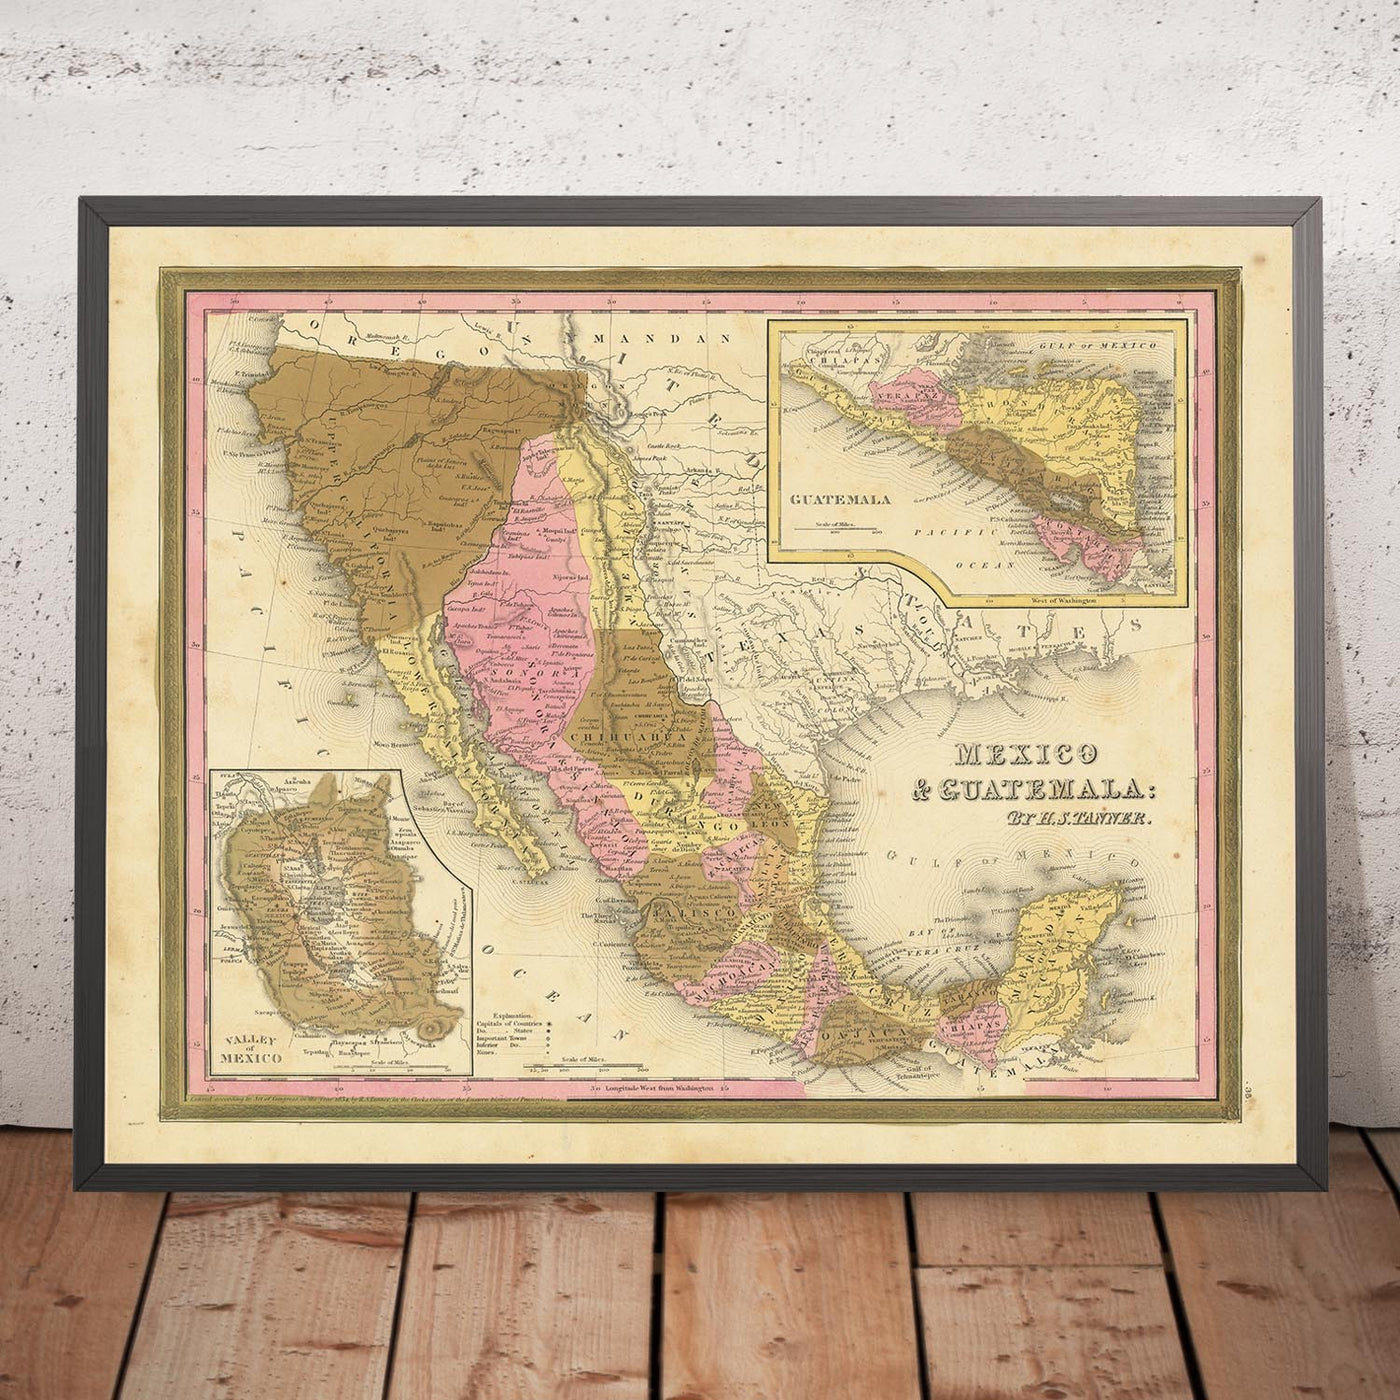 Ancienne carte du Mexique, du Guatemala, du Texas et de la Californie par H.S. Tanner, 1839 : Mexico, Puebla, Los Angeles, San Francisco, Austin, Houston